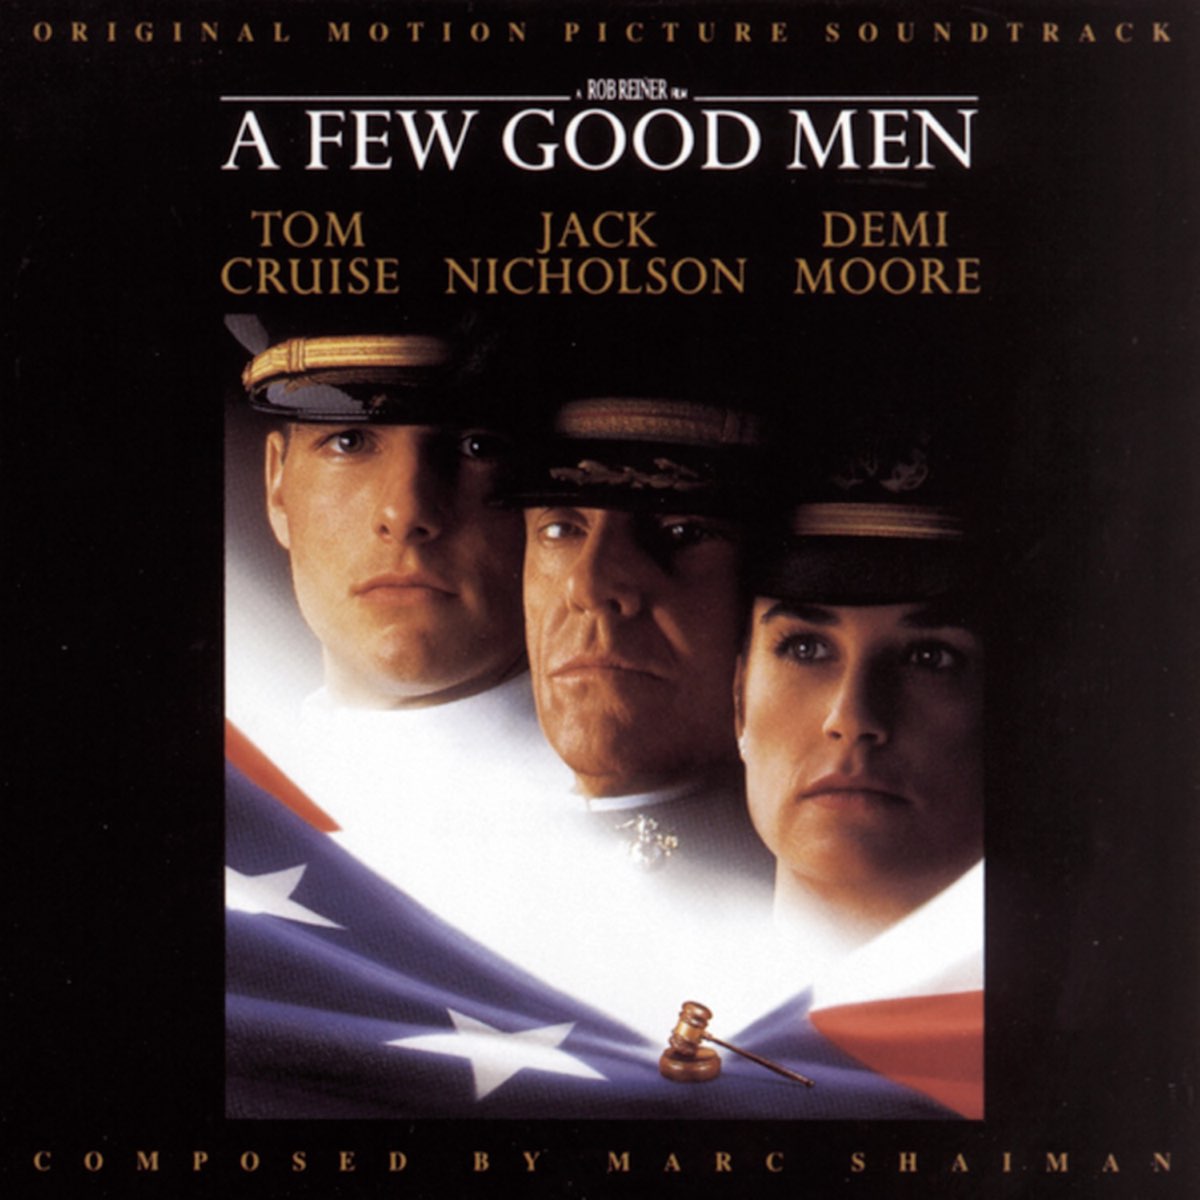 マーク シャイマンの A Few Good Men Original Motion Picture Soundtrack をapple Musicで